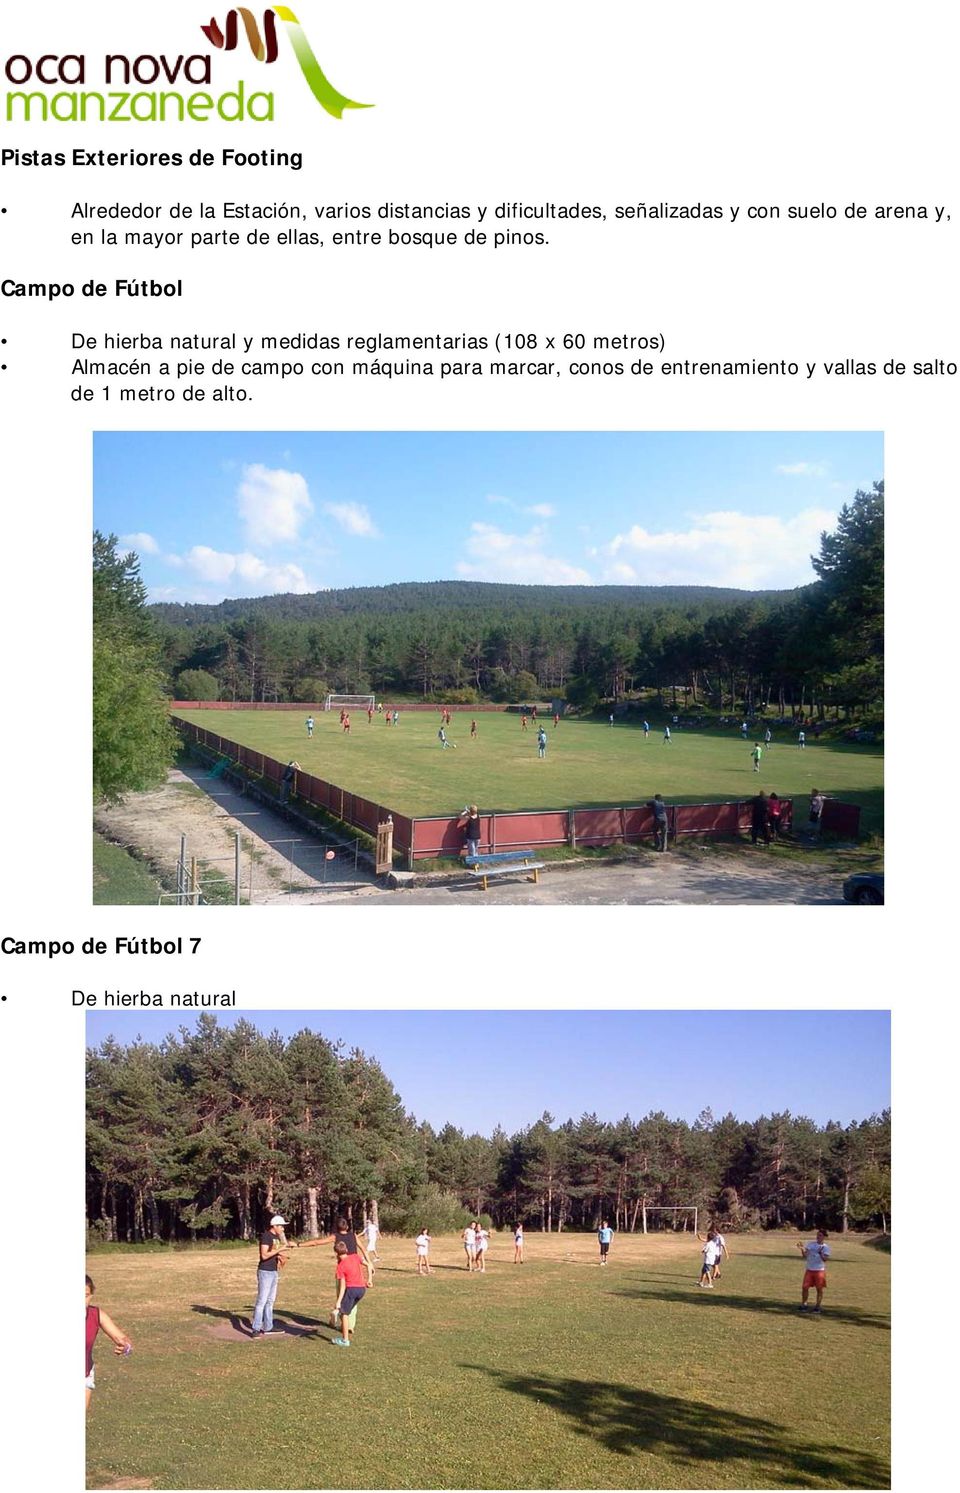 Campo de Fútbol De hierba natural y medidas reglamentarias (108 x 60 metros) Almacén a pie de campo